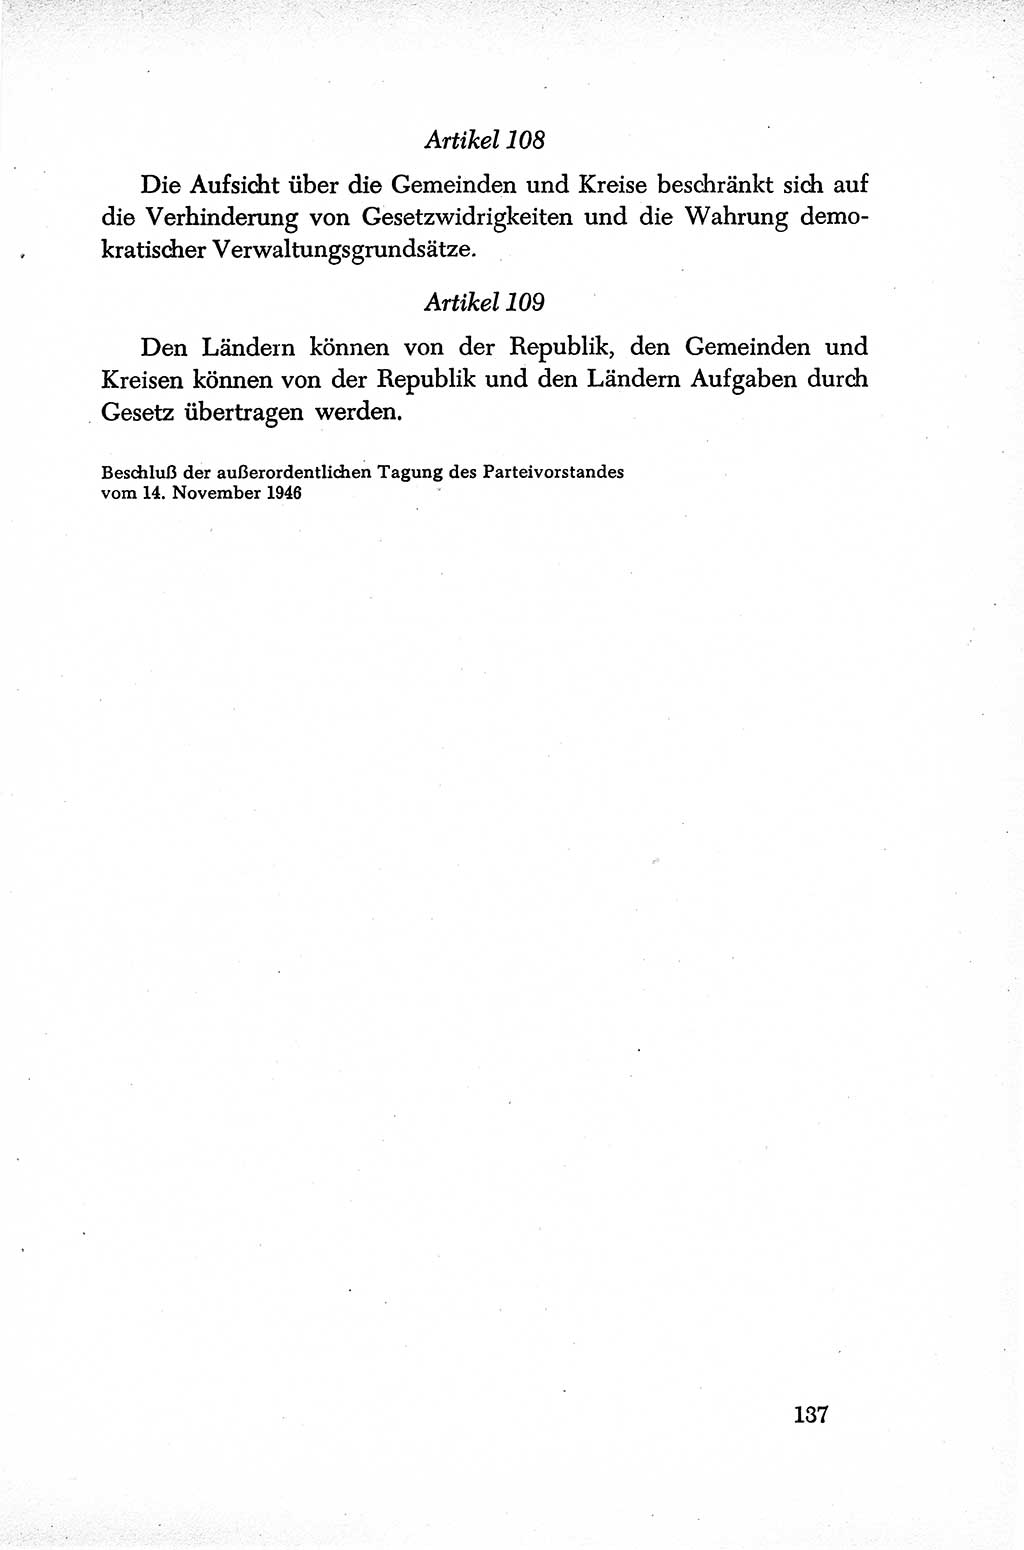 Dokumente der Sozialistischen Einheitspartei Deutschlands (SED) [Sowjetische Besatzungszone (SBZ) Deutschlands] 1946-1948, Seite 137 (Dok. SED SBZ Dtl. 1946-1948, S. 137)